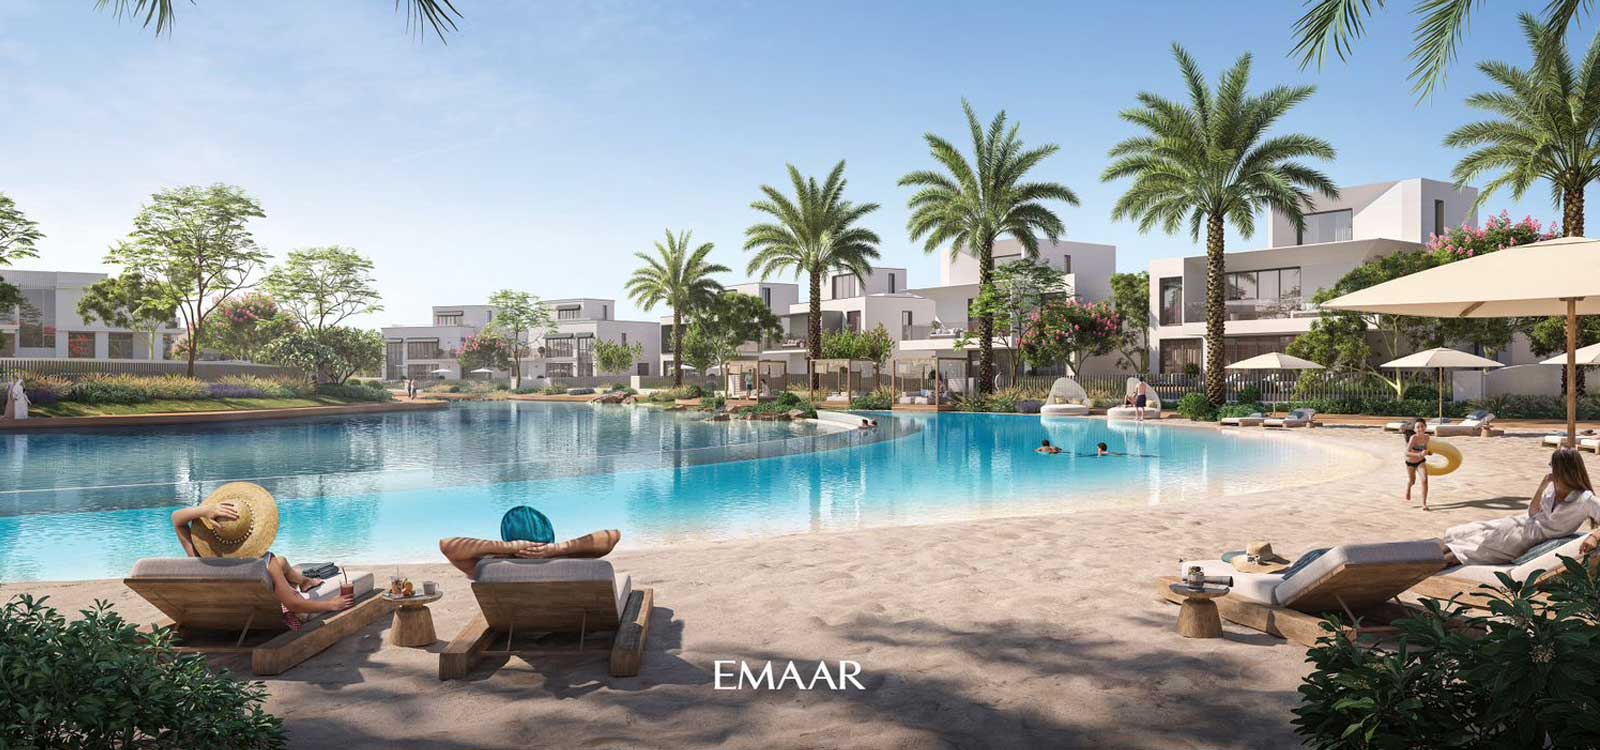 The Oasis by Emaar.